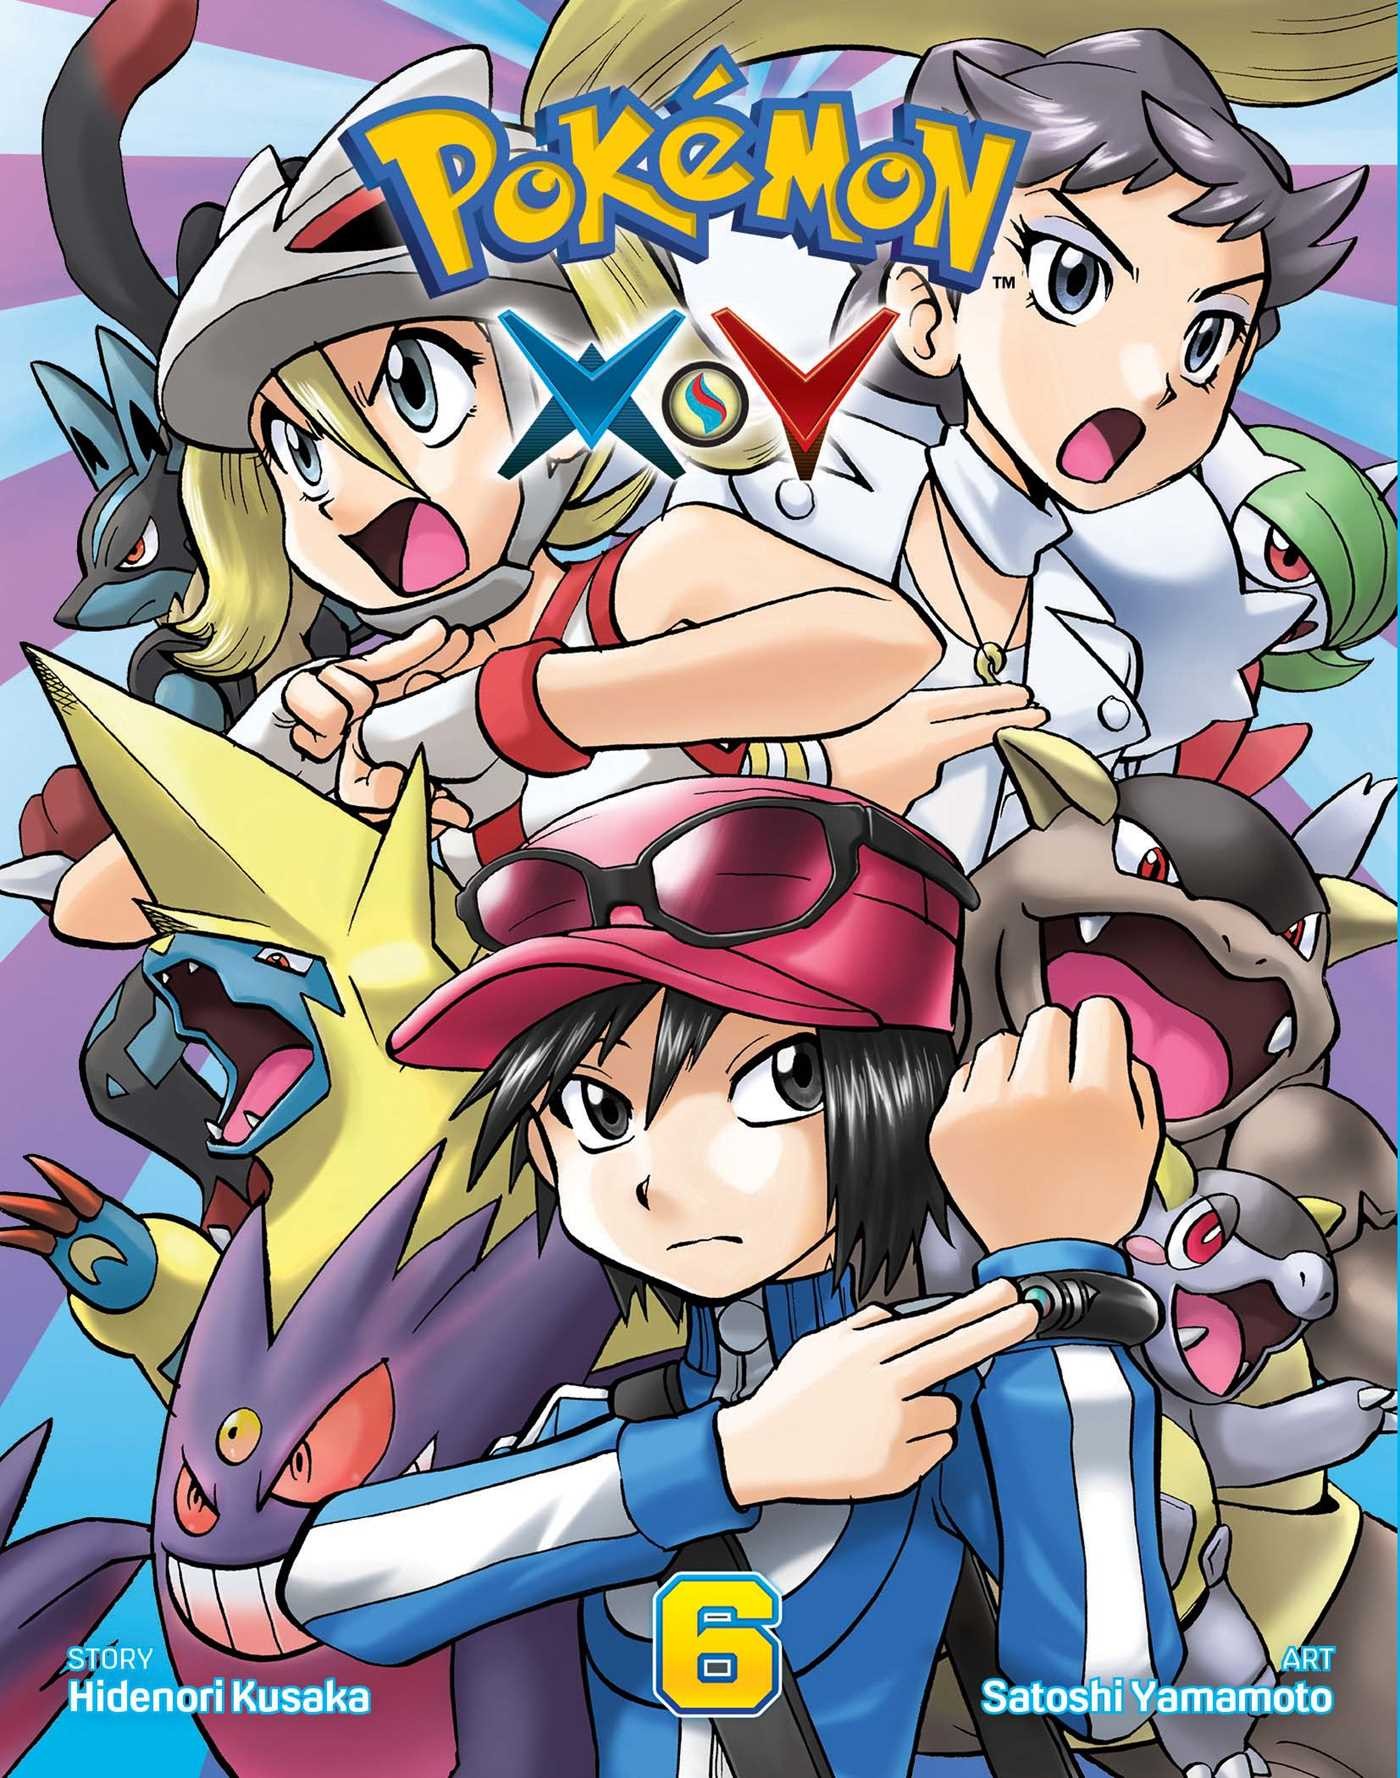 Pokémon X•Y Vol. 6 by Hidenori Kusaka